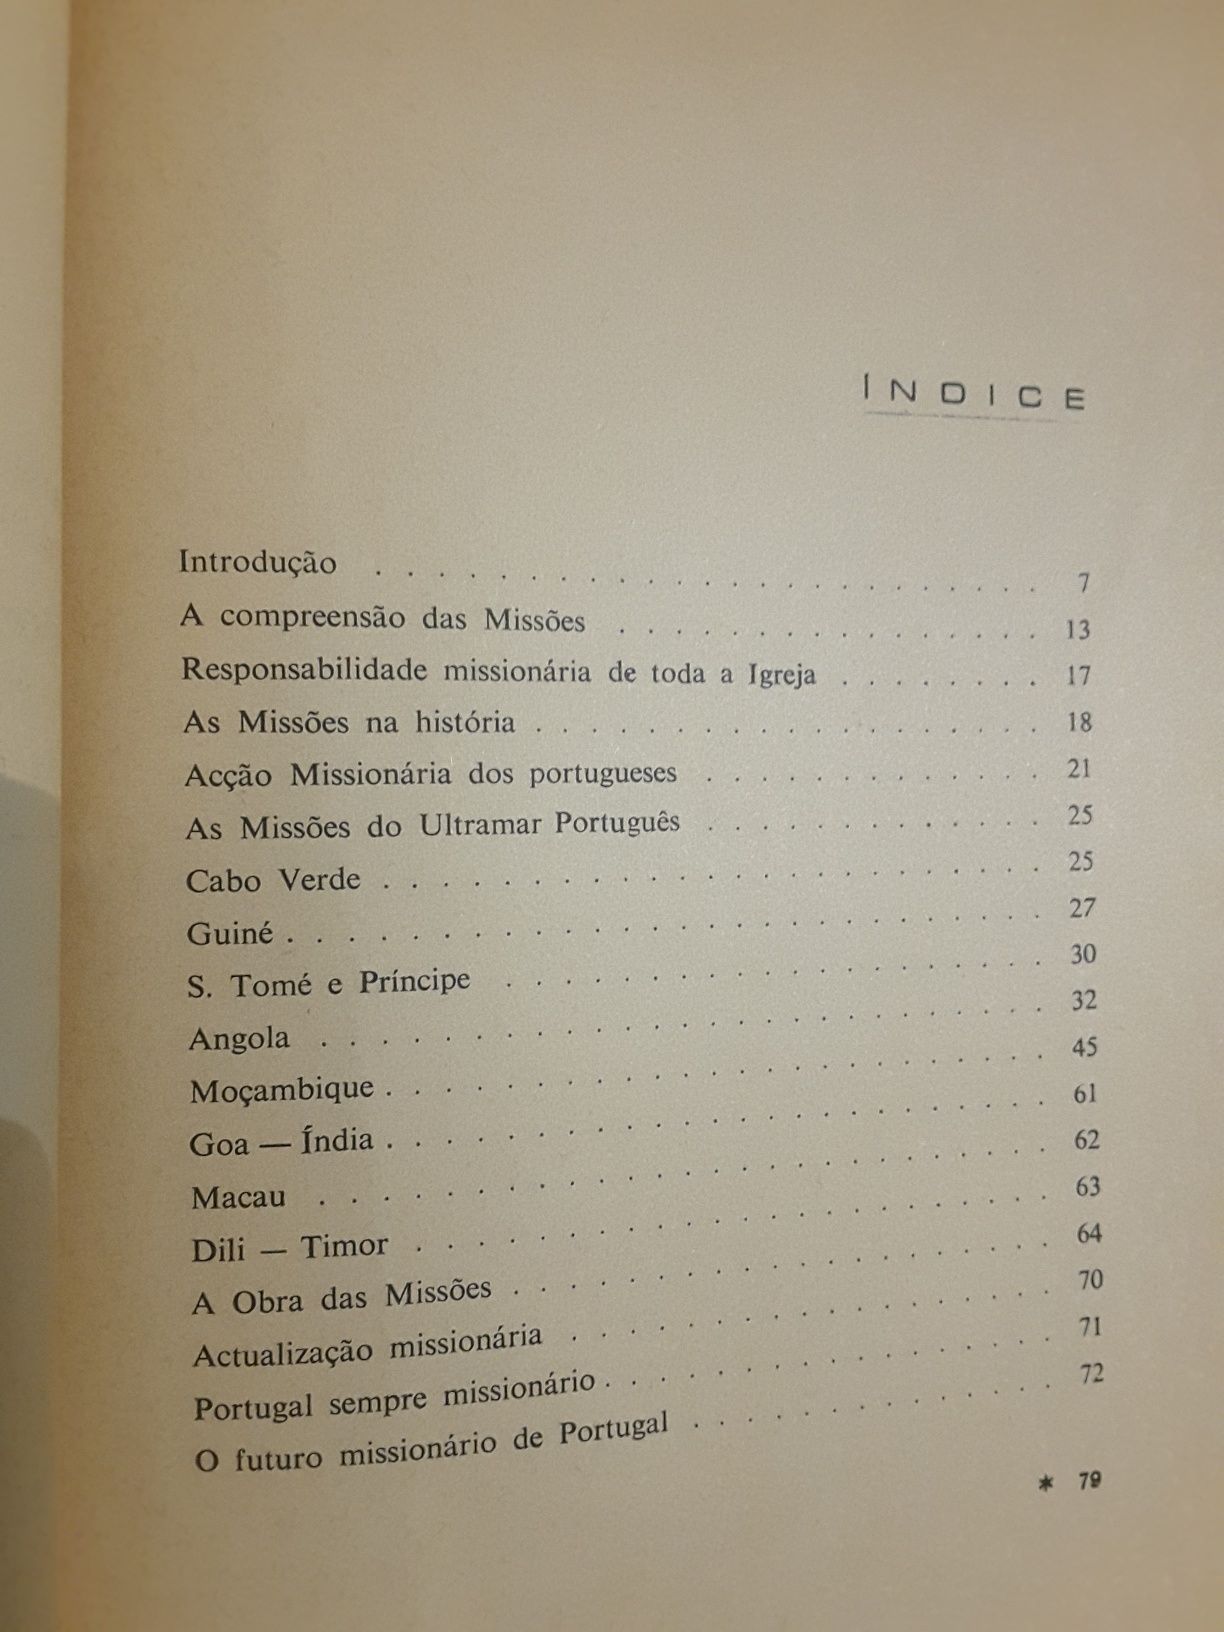 Aires de Ornelas / João de Almeida / As Missões Ultramarinas